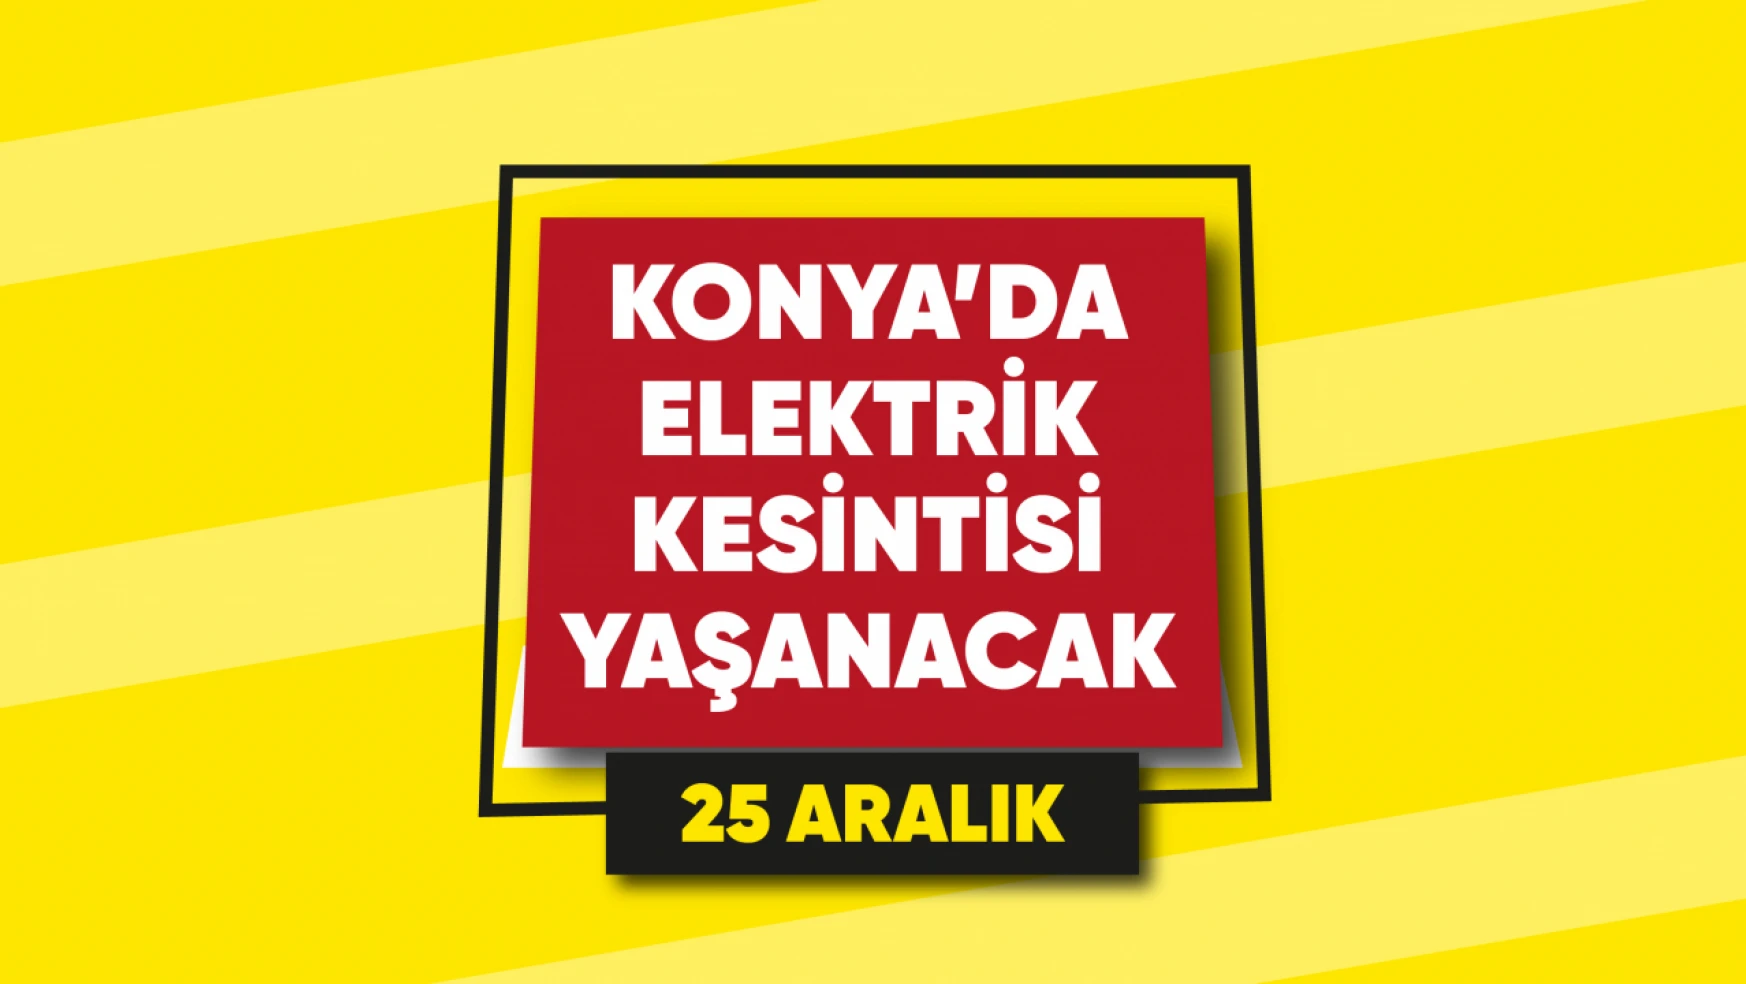 Konya'da elektrik kesintisi yaşanacak mahalle ve sokaklar (25 Aralık)